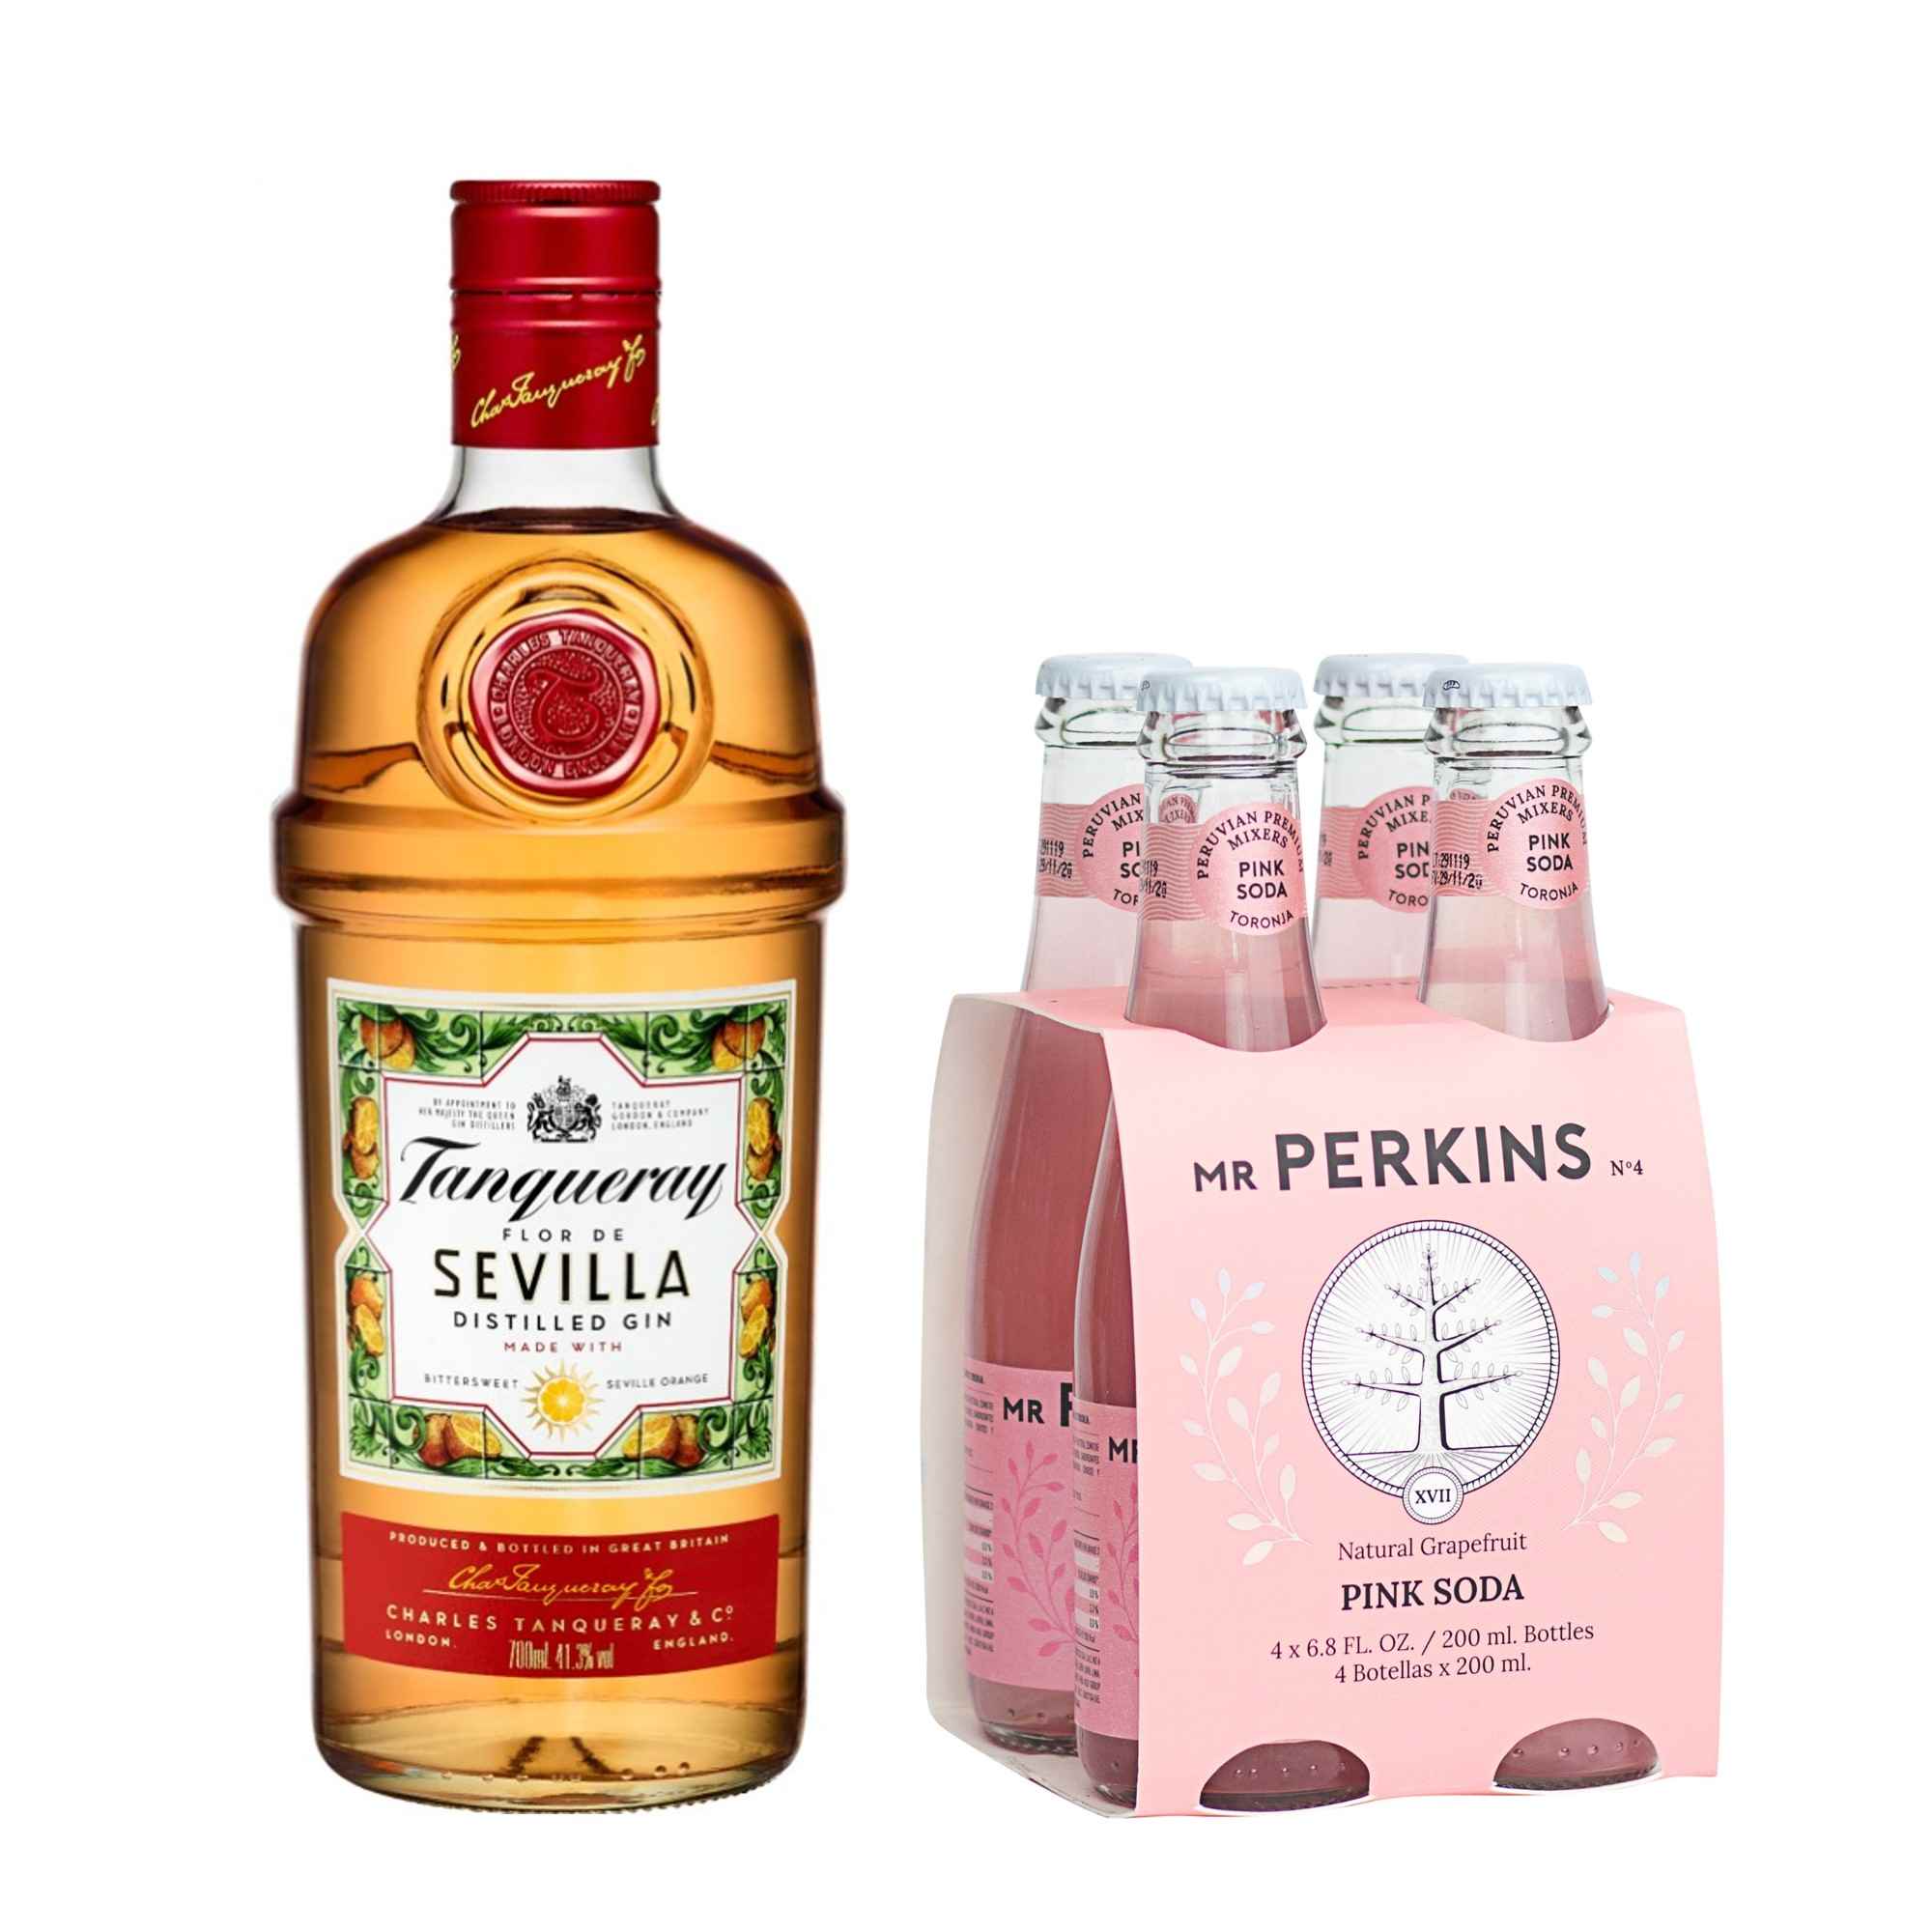 Pack Gin TANQUERAY Sevilla Botella 700ml + Gaseosa MR PERKINS Soda Pink Botella 200ml 4 Pack